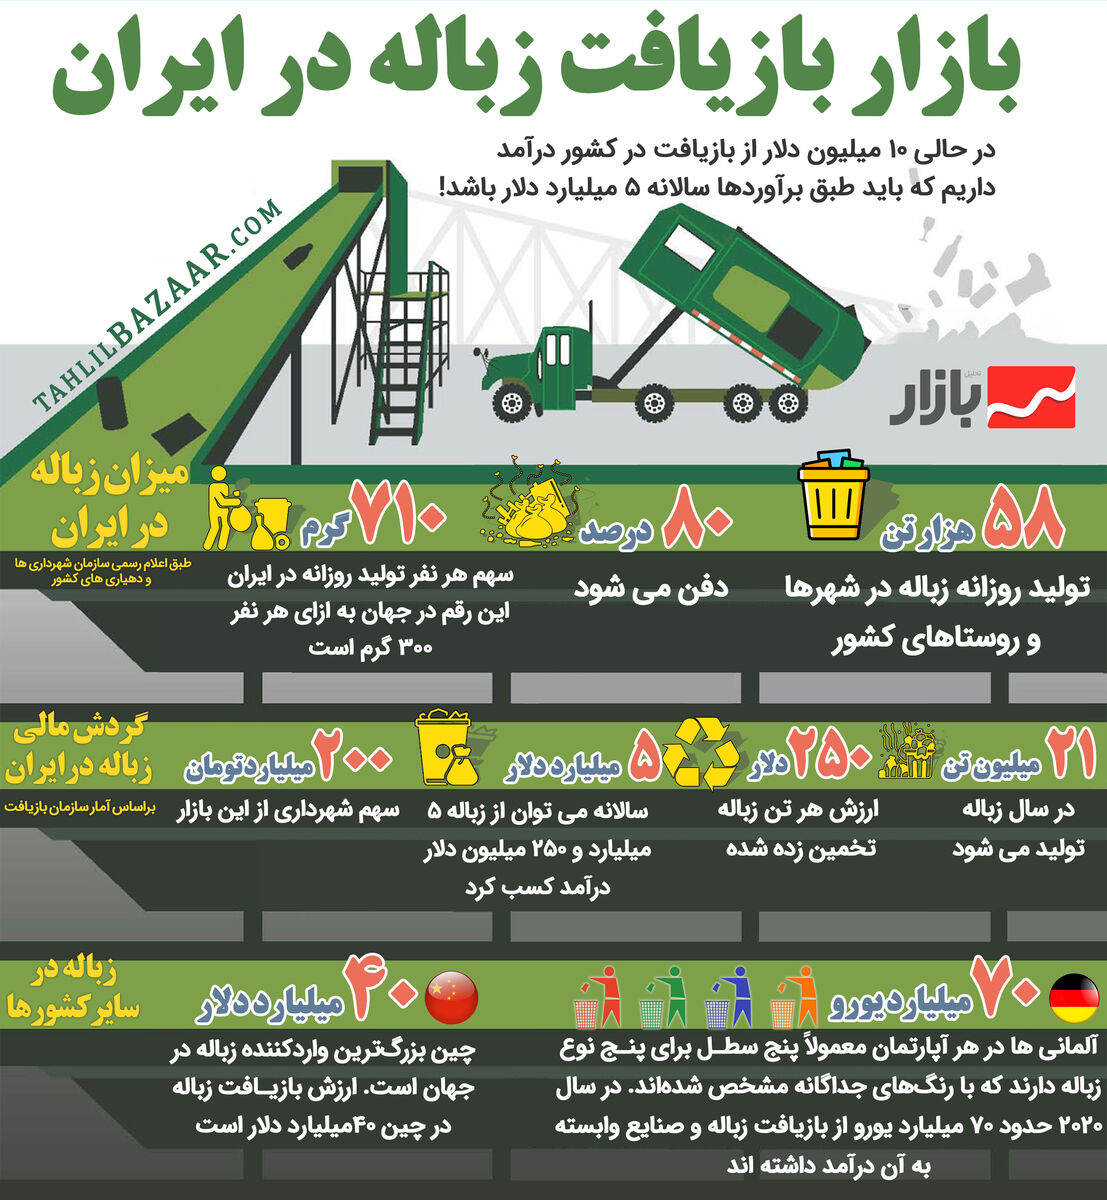 بازار بازیافت زباله در ایران